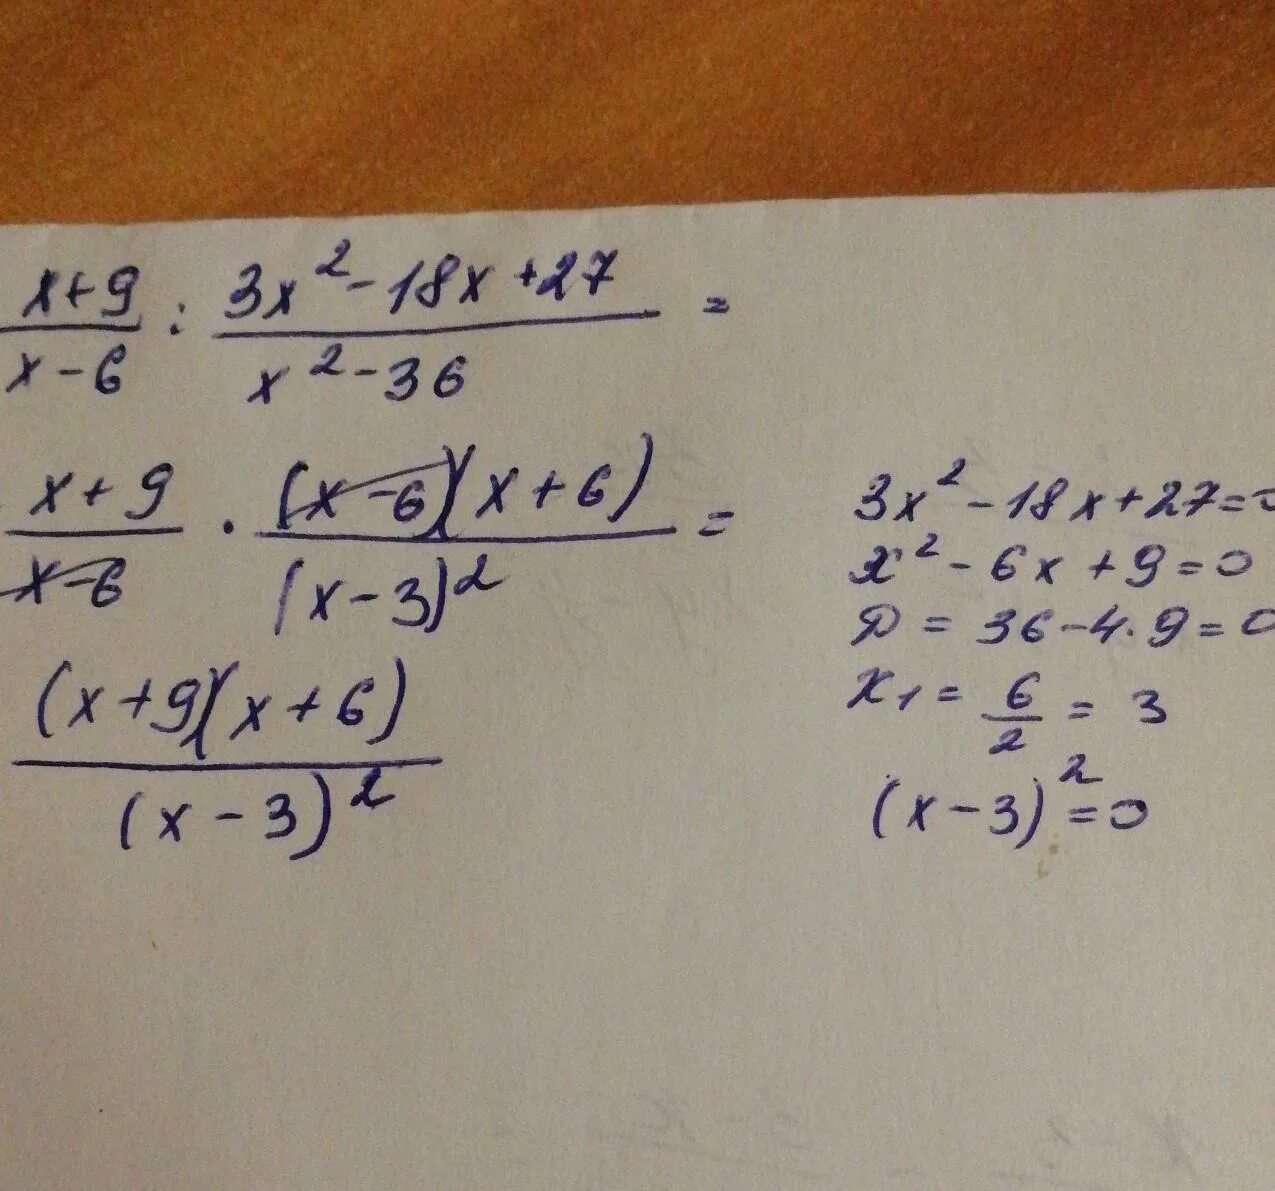 3x 27x 0. Упростить выражение x2-9/x-6 2 - 27 6x-x 2. X-9/x2-9 3/3x-x2 упростите выражение. 3/X+3+3/x2-3x+2x/9-x2 упростите выражение. X^3-9x^2+27x-27.